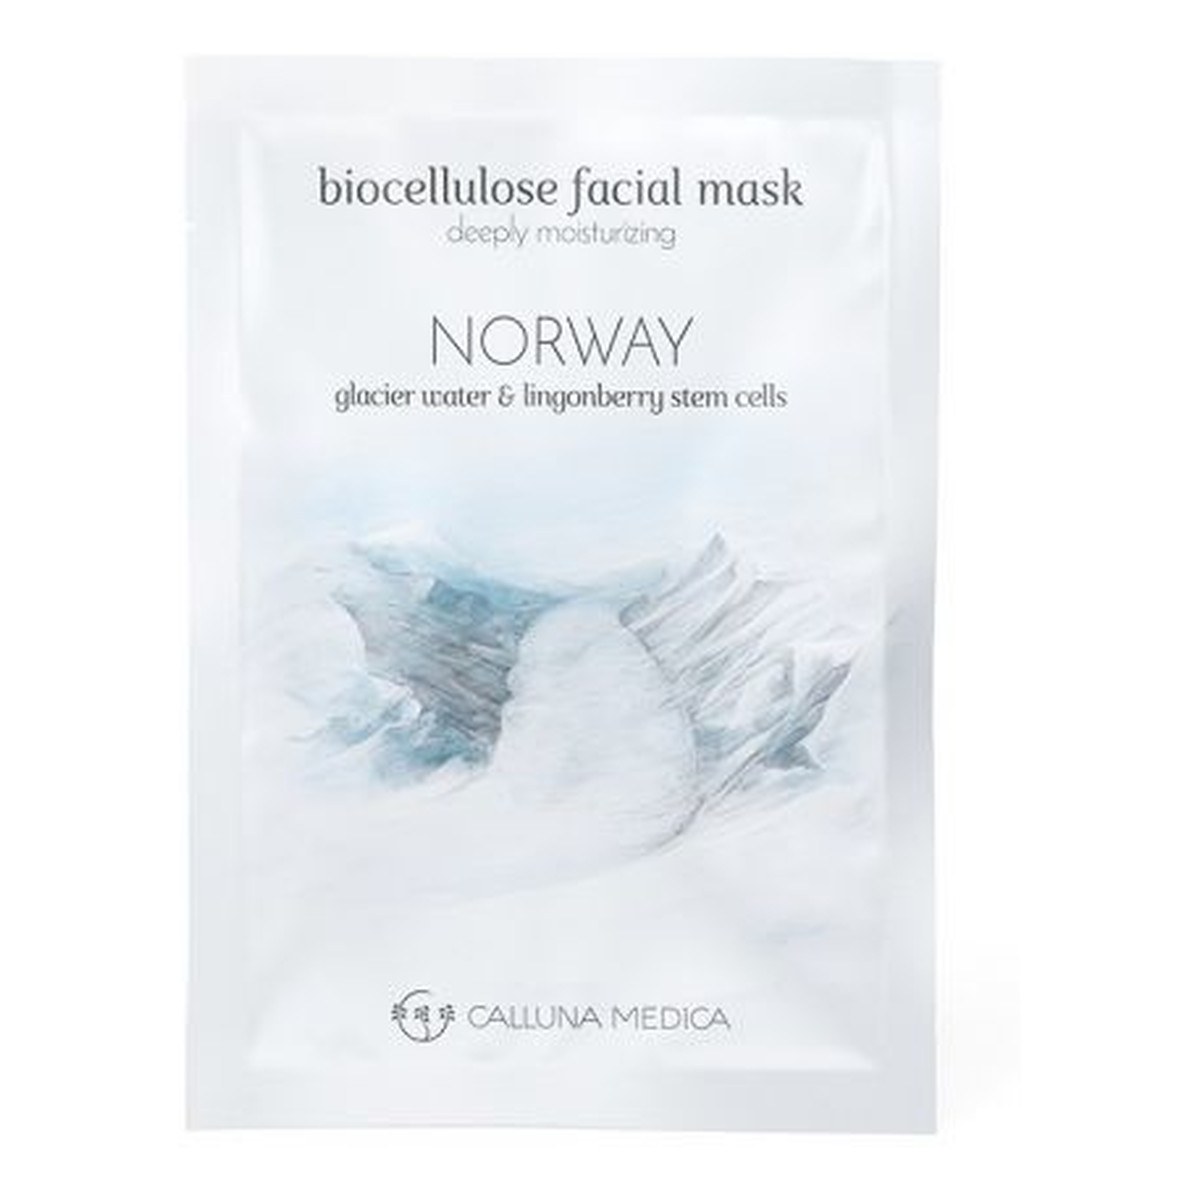 Calluna Medica Norway Deeply Moisturizing Biocellulose Facial Mask głęboko nawilżająca maseczka z biocelulozy Glacier Water & Lingonberry Stem Cells 12ml